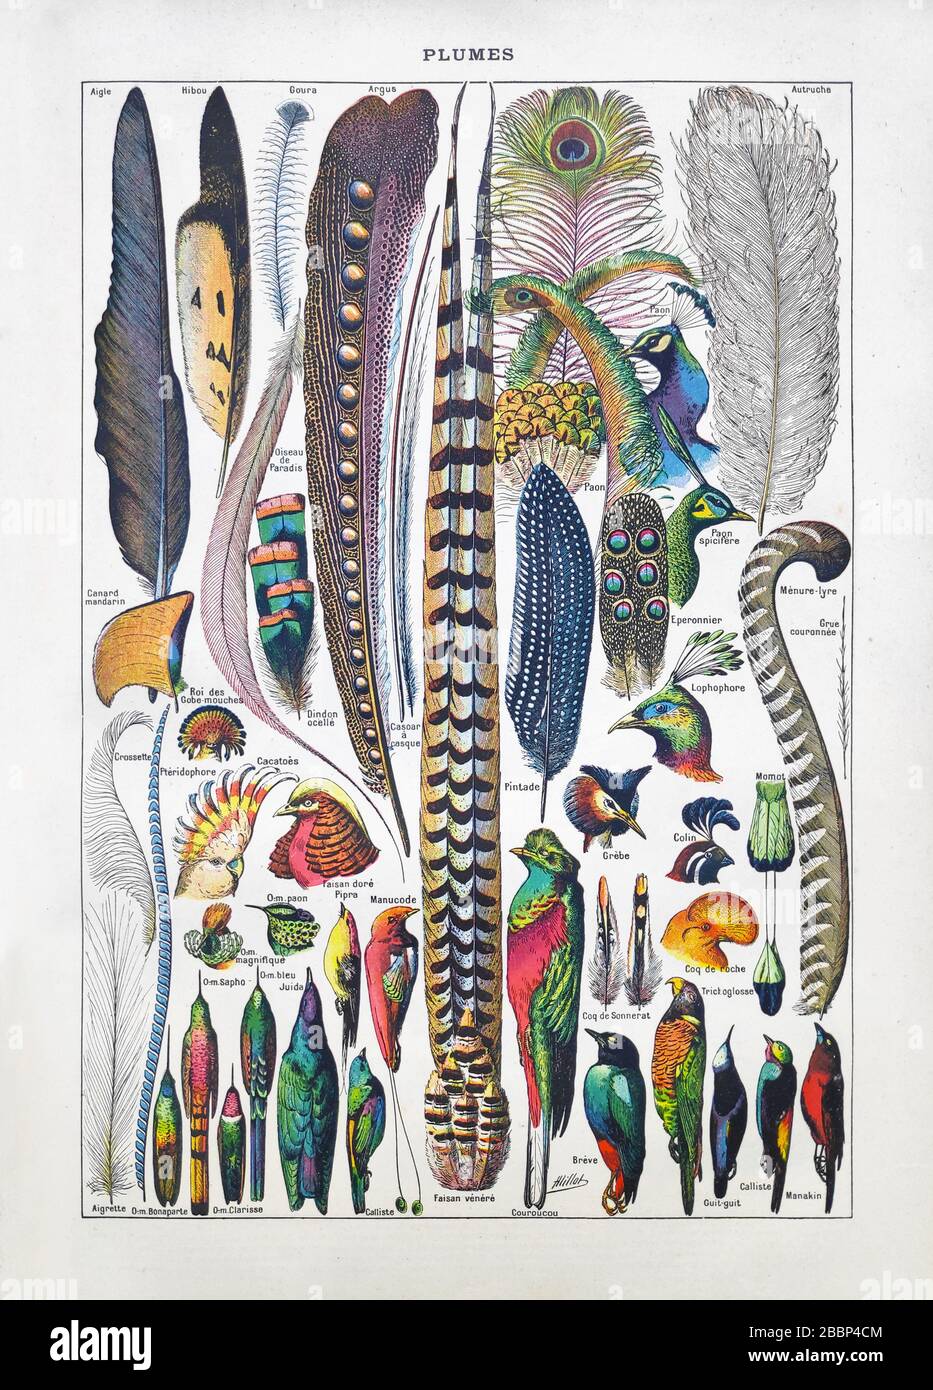 Ancienne illustration sur les plumes et les oiseaux par Adolphe Philippe Millot imprimé à la fin du XIXe siècle. Banque D'Images